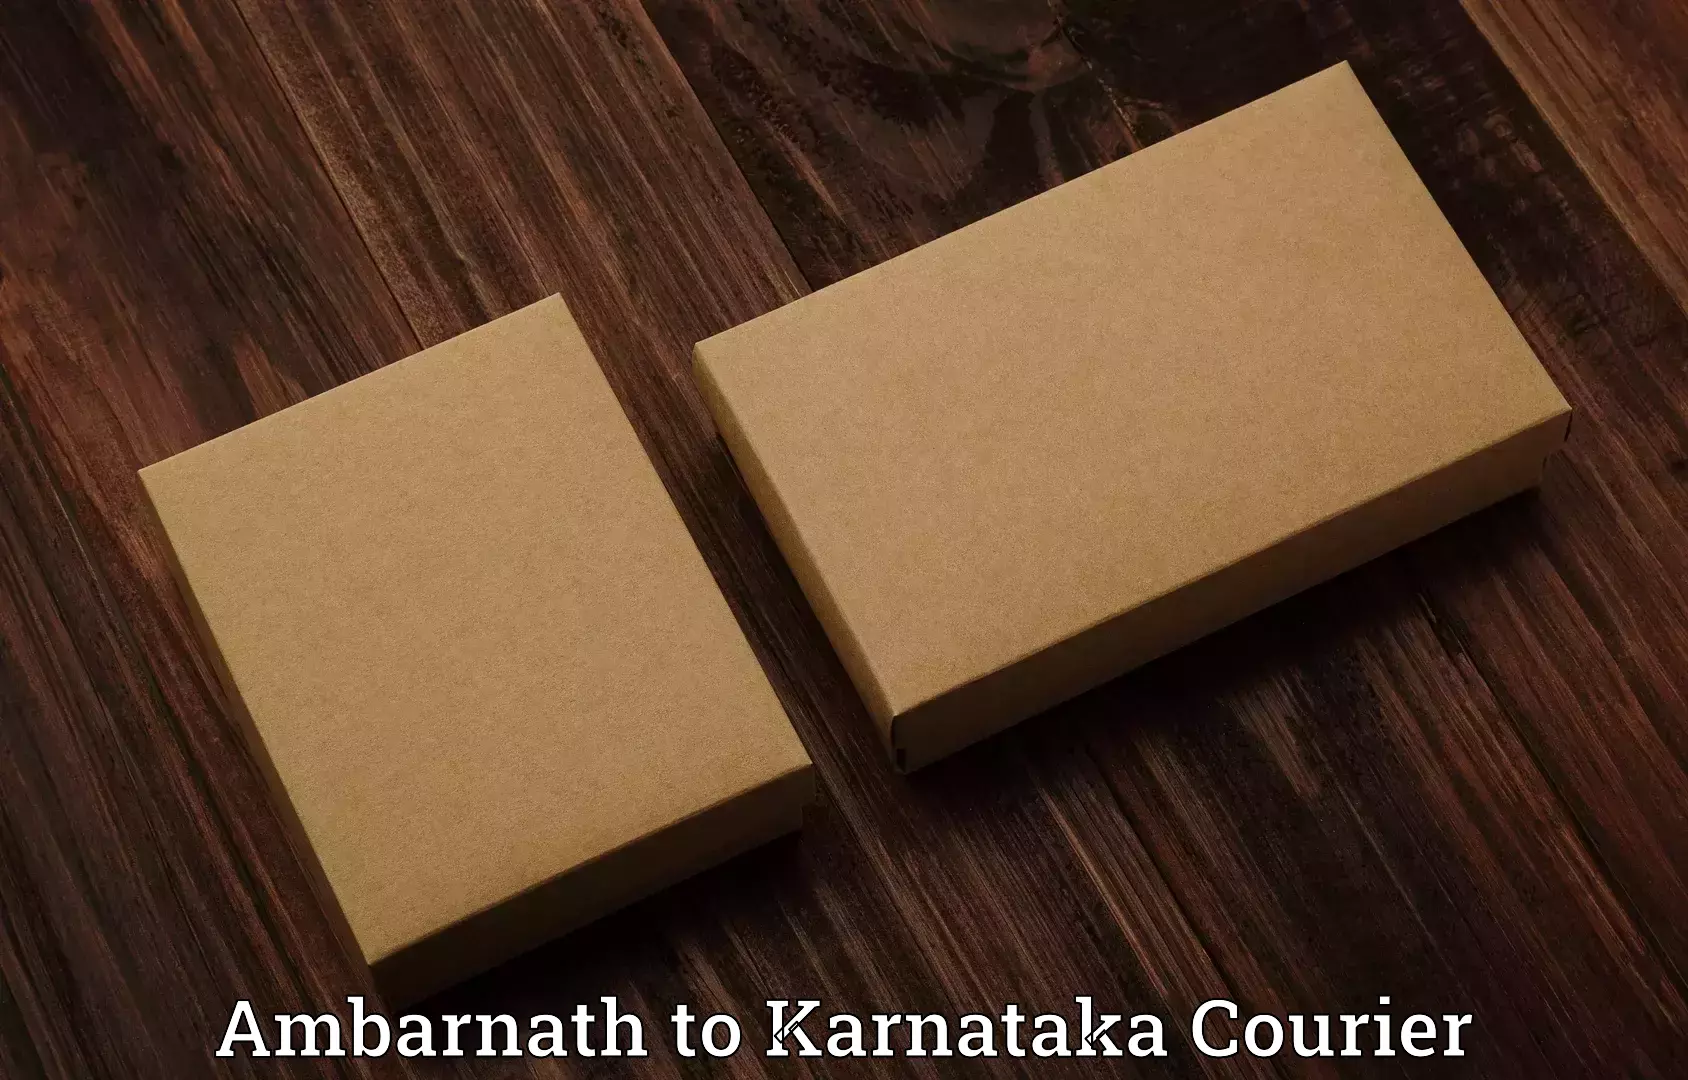 Emergency baggage service Ambarnath to Kanjarakatte